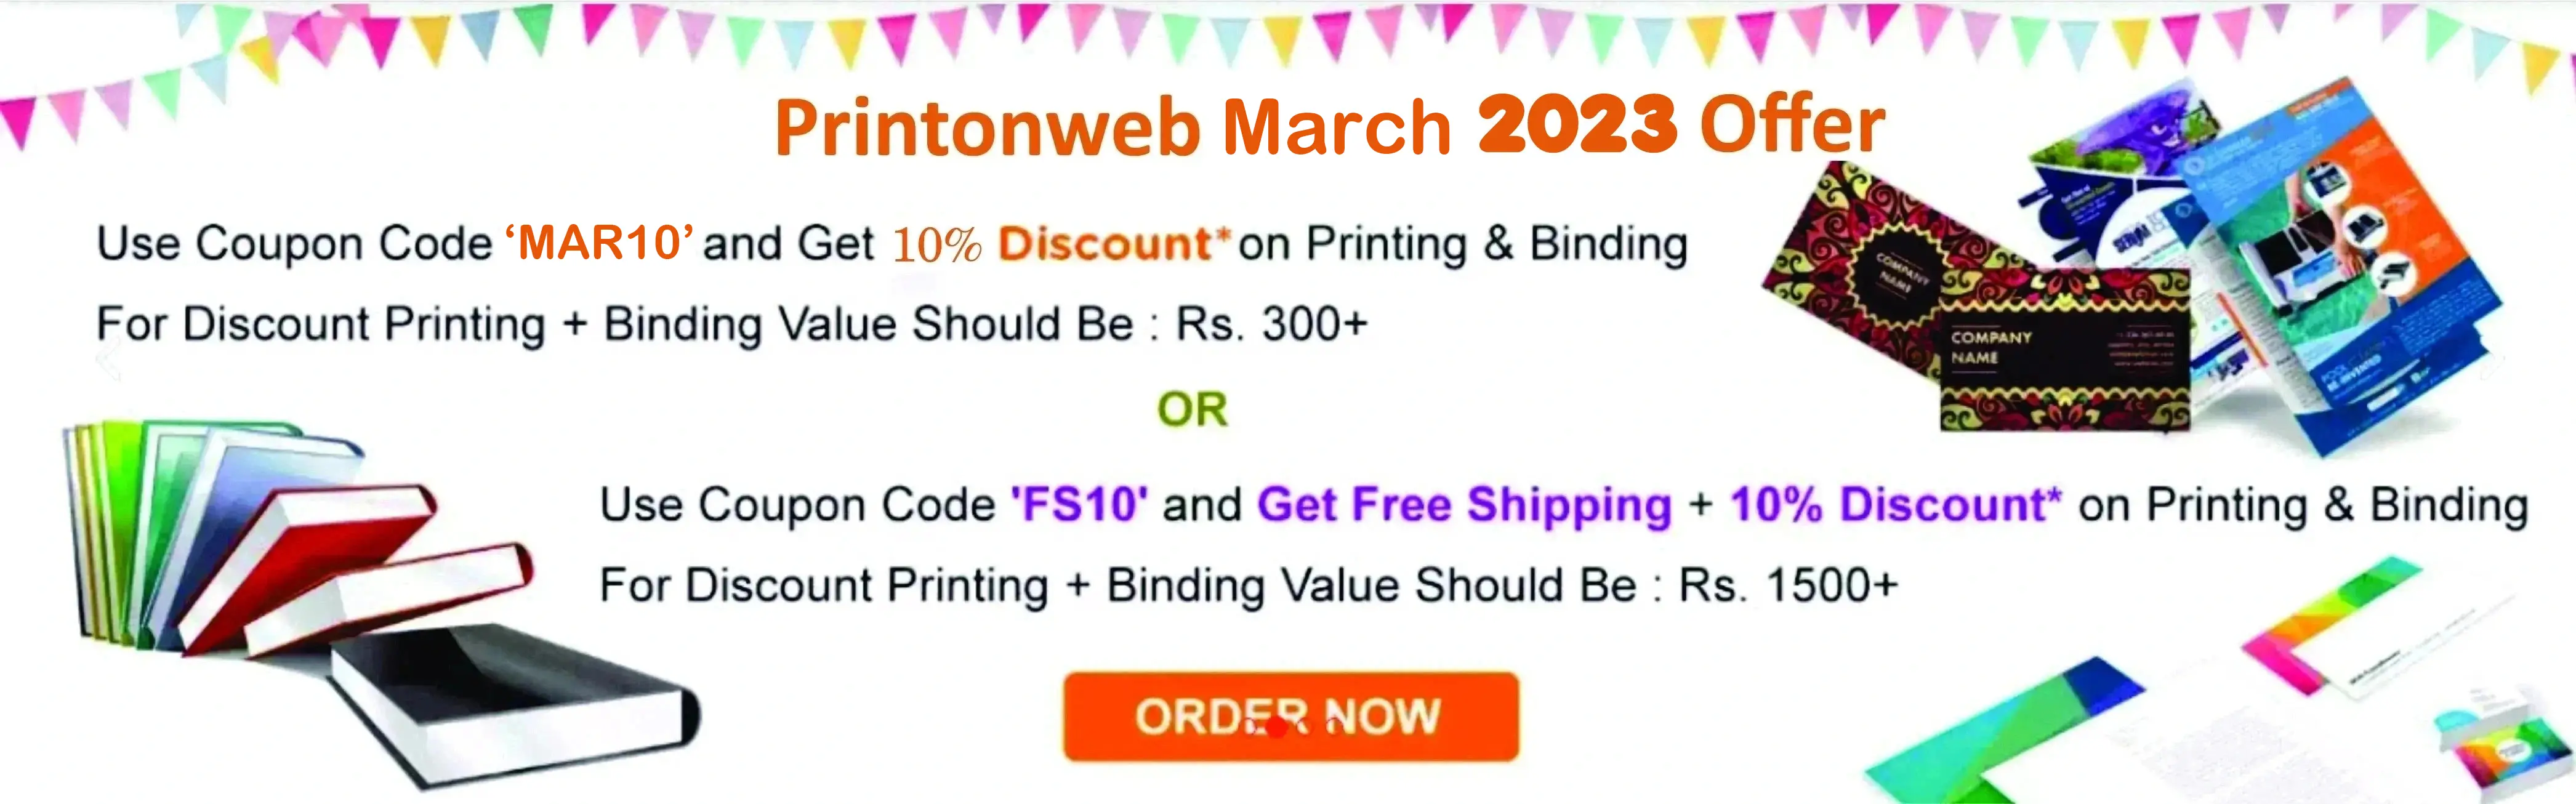 PrintOnWeb.in India's Best Online Printing Store